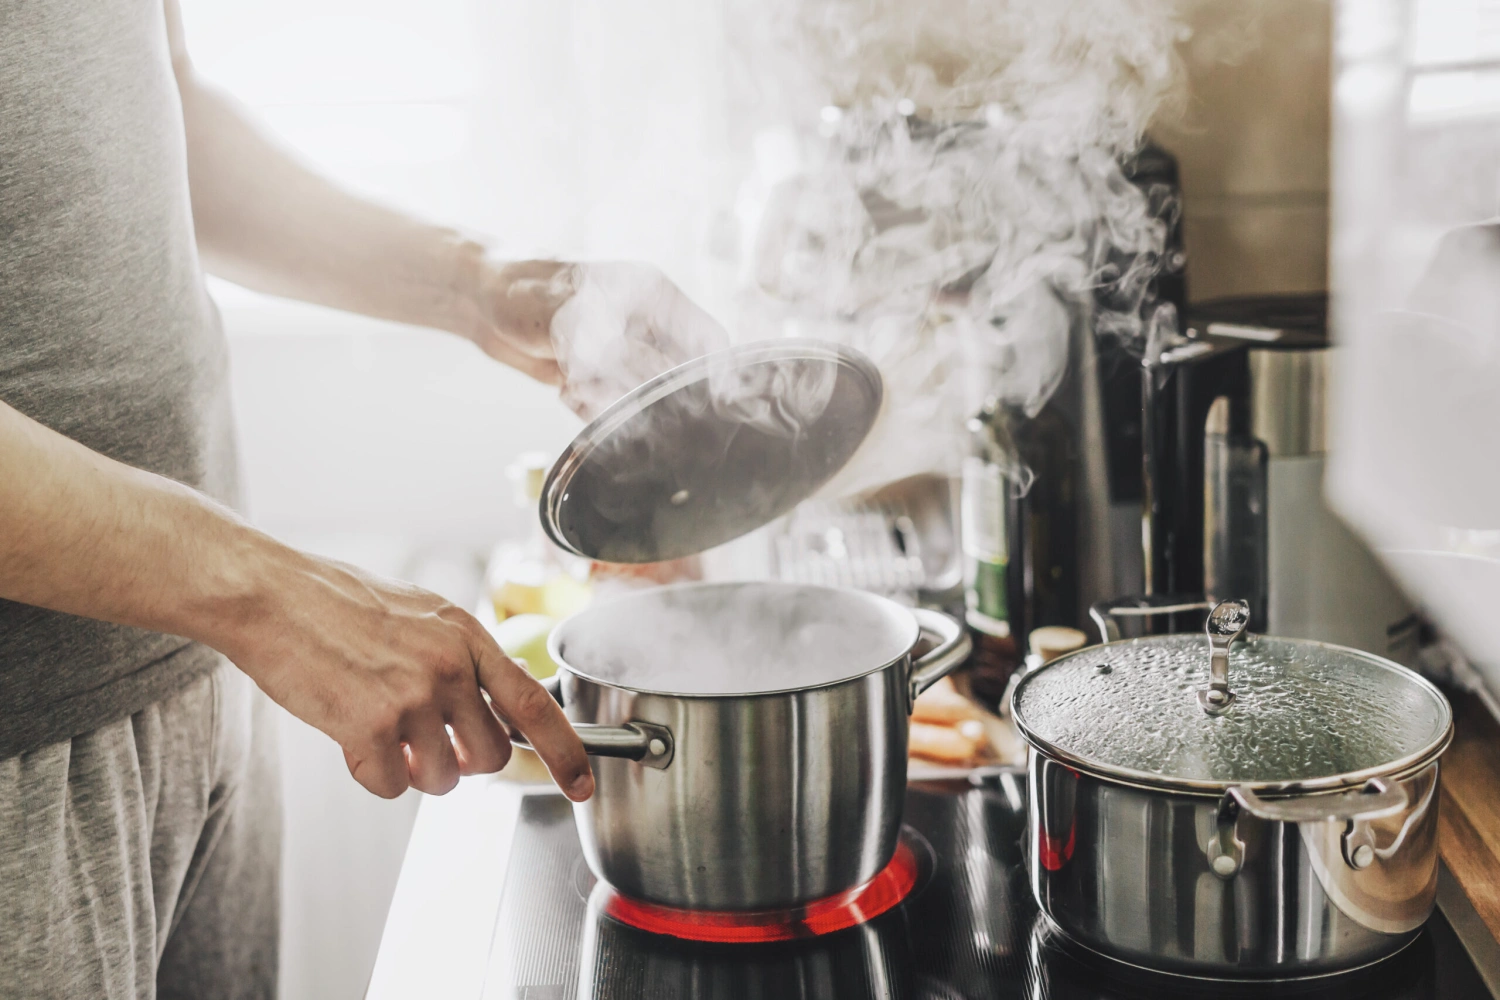 Neplytvajte energiami v kuchyni: 10 tipov, ako ušetriť pri varení